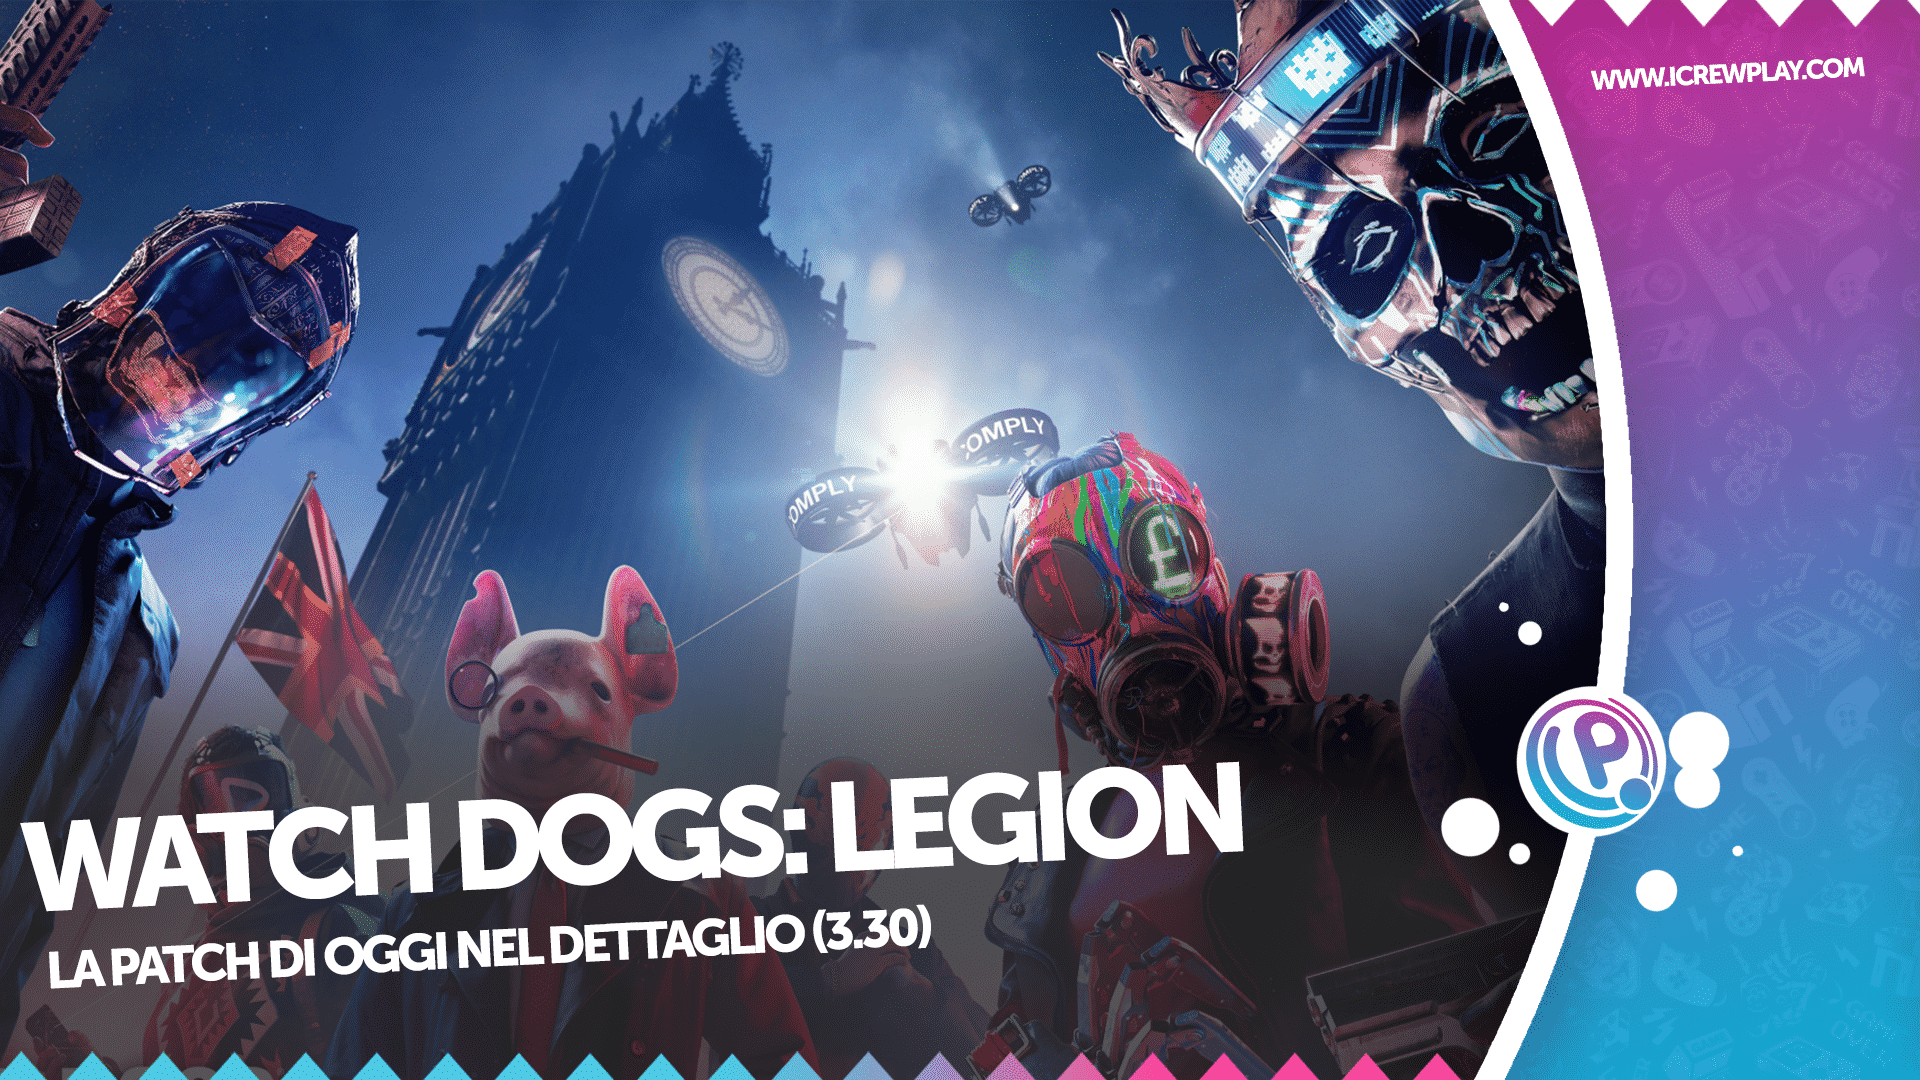 Watch Dogs, Watch Dogs: Legion, Watch Dogs: Legion Update, Watch Dogs: Legion Mod, Watch Dogs: Legion Patch